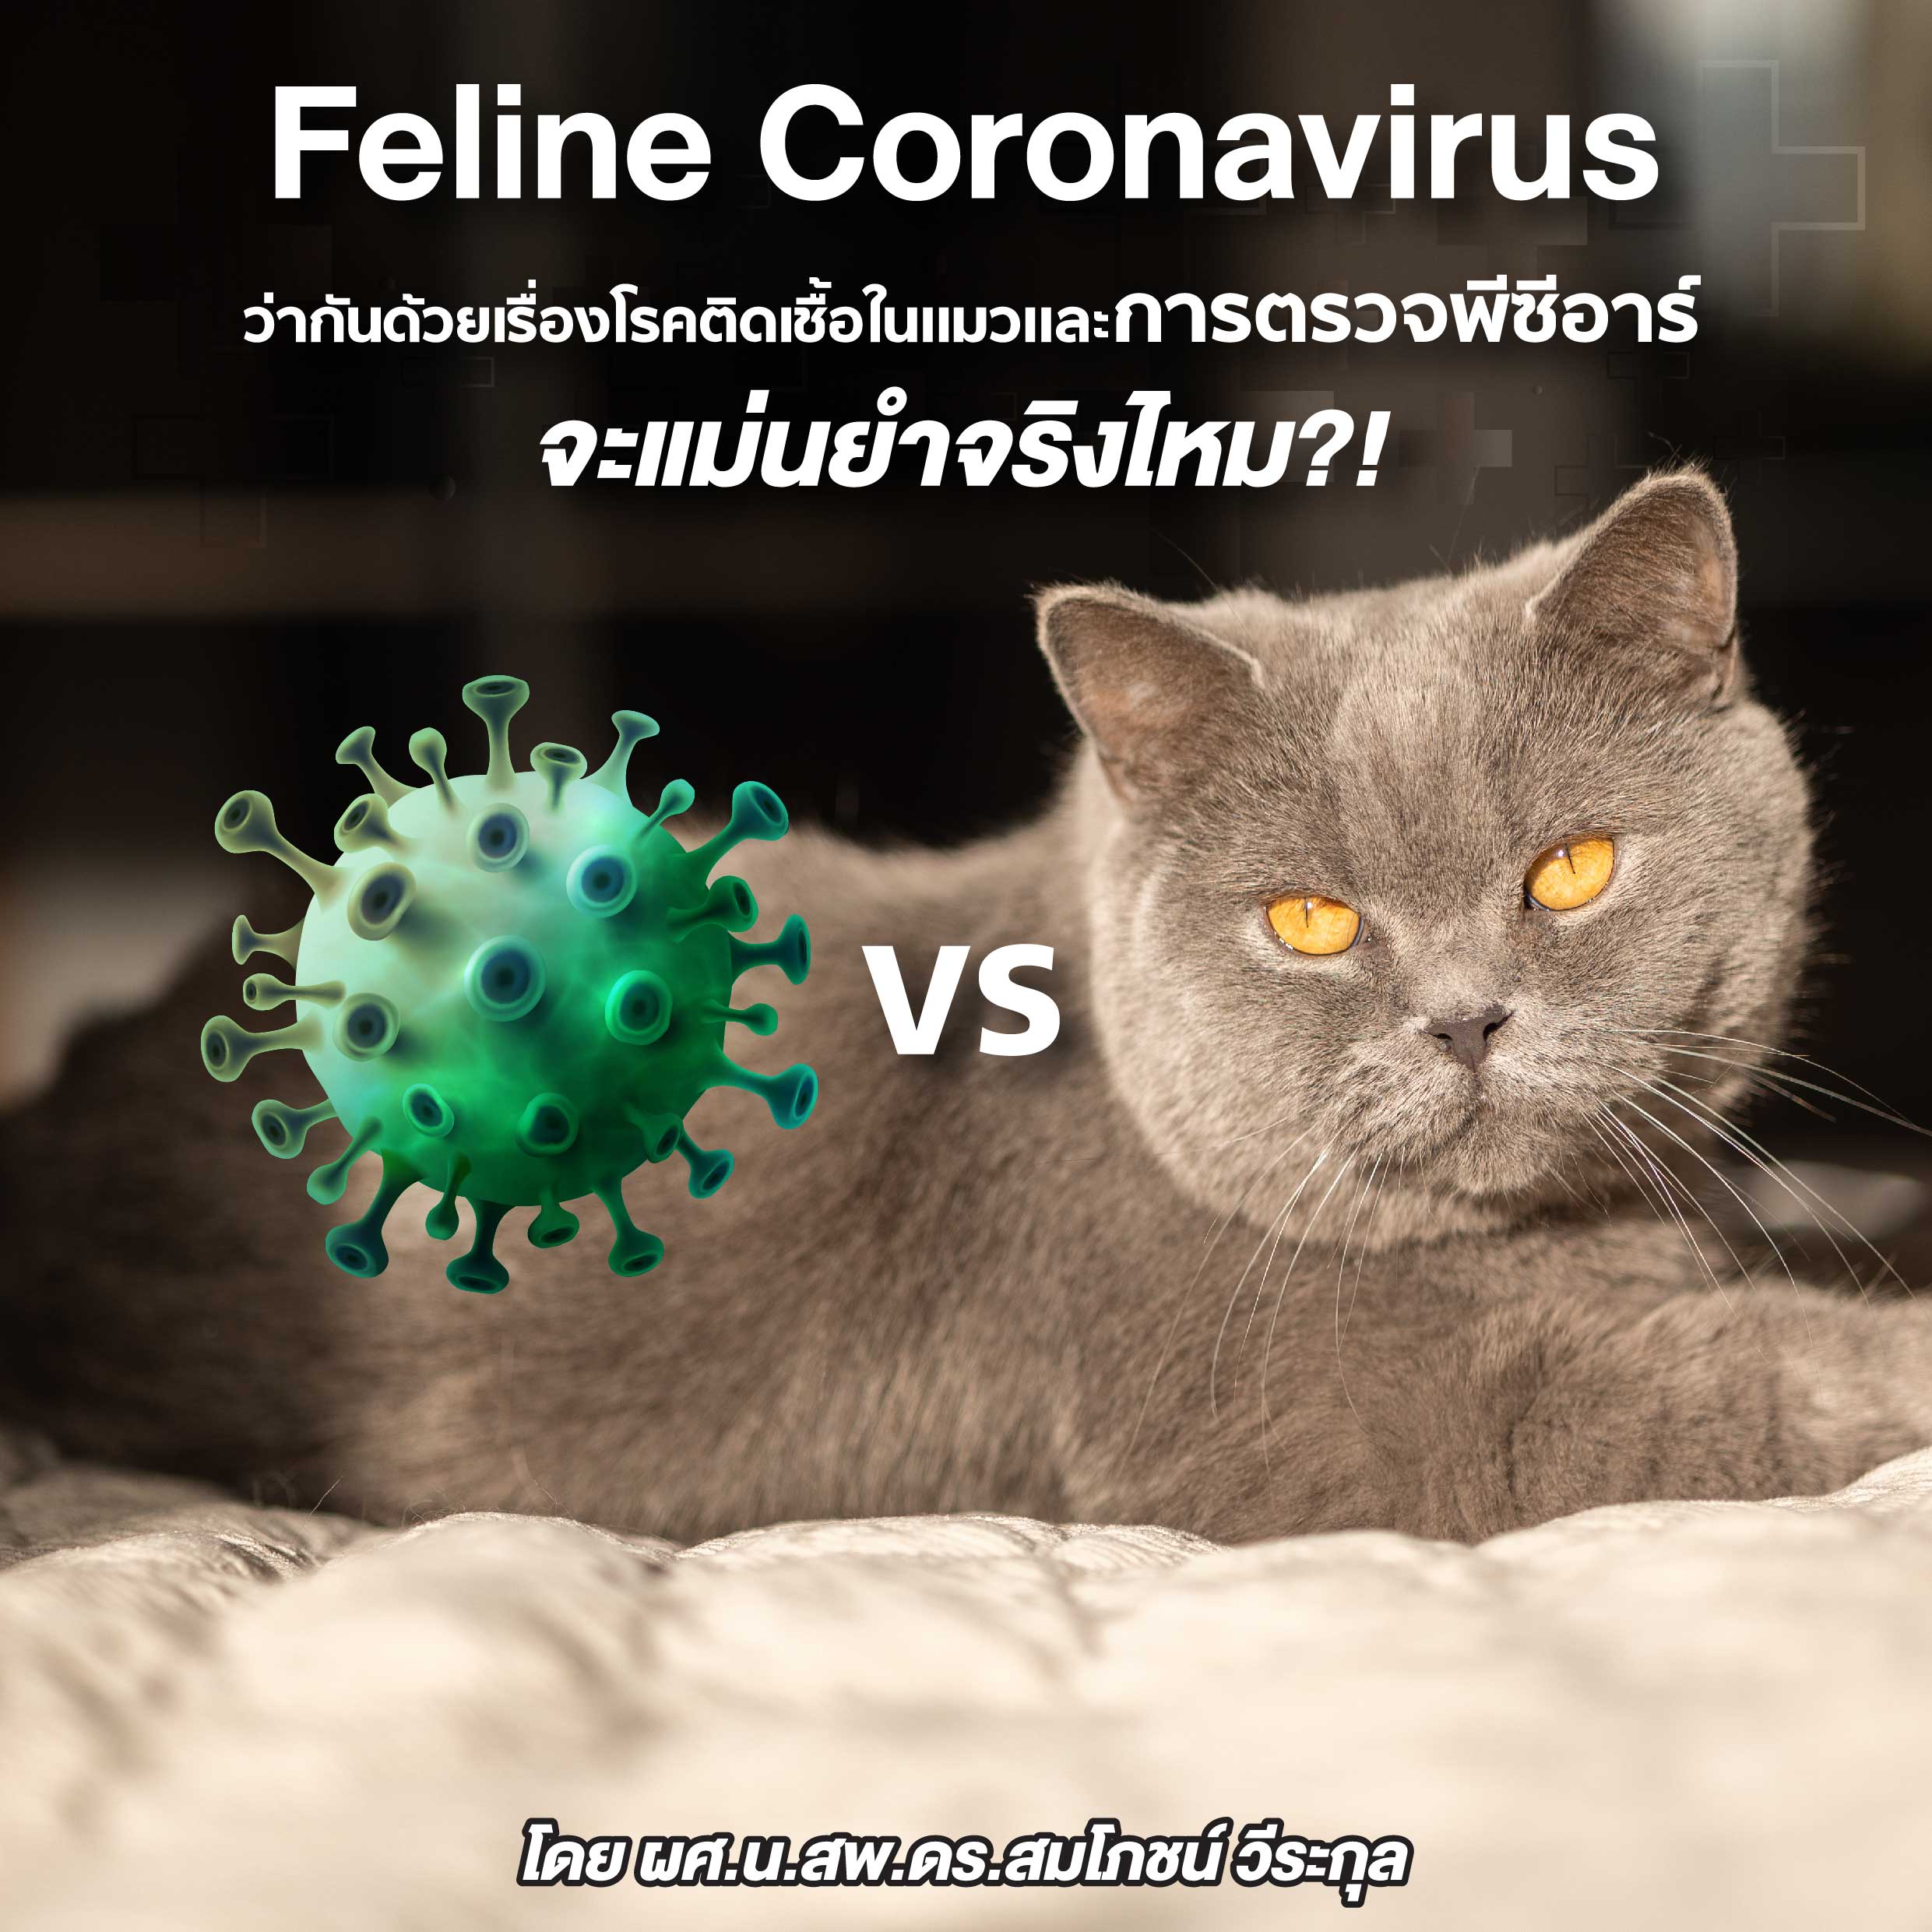 Feline Coronavirus ว่ากันด้วยเรื่องโรคติดเชื้อในแมวและการตรวจพีซีอาร์ จะแม่นยำจริงไหม?!